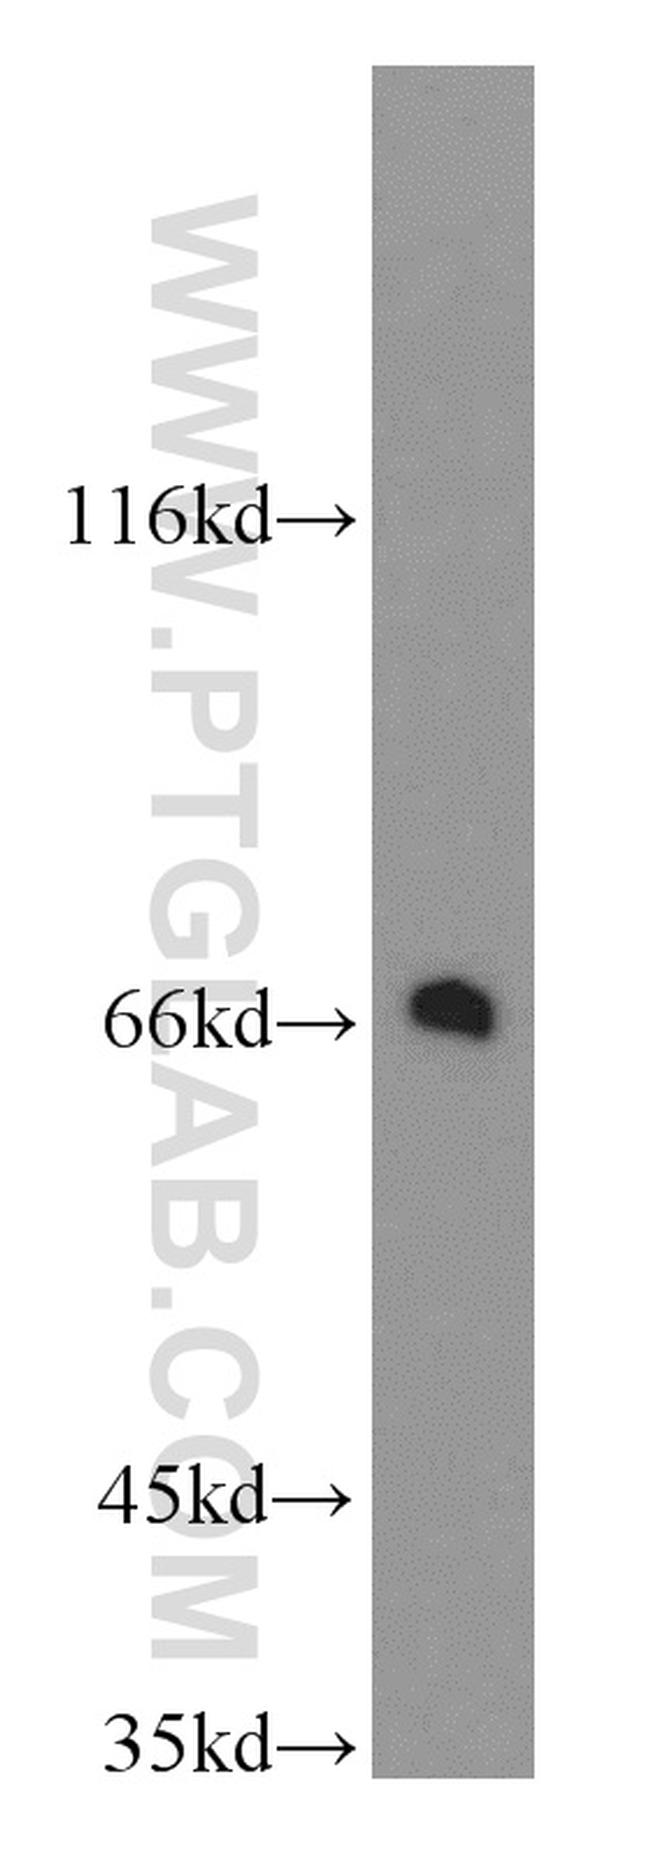 TGFBI / BIGH3 Antibody in Western Blot (WB)